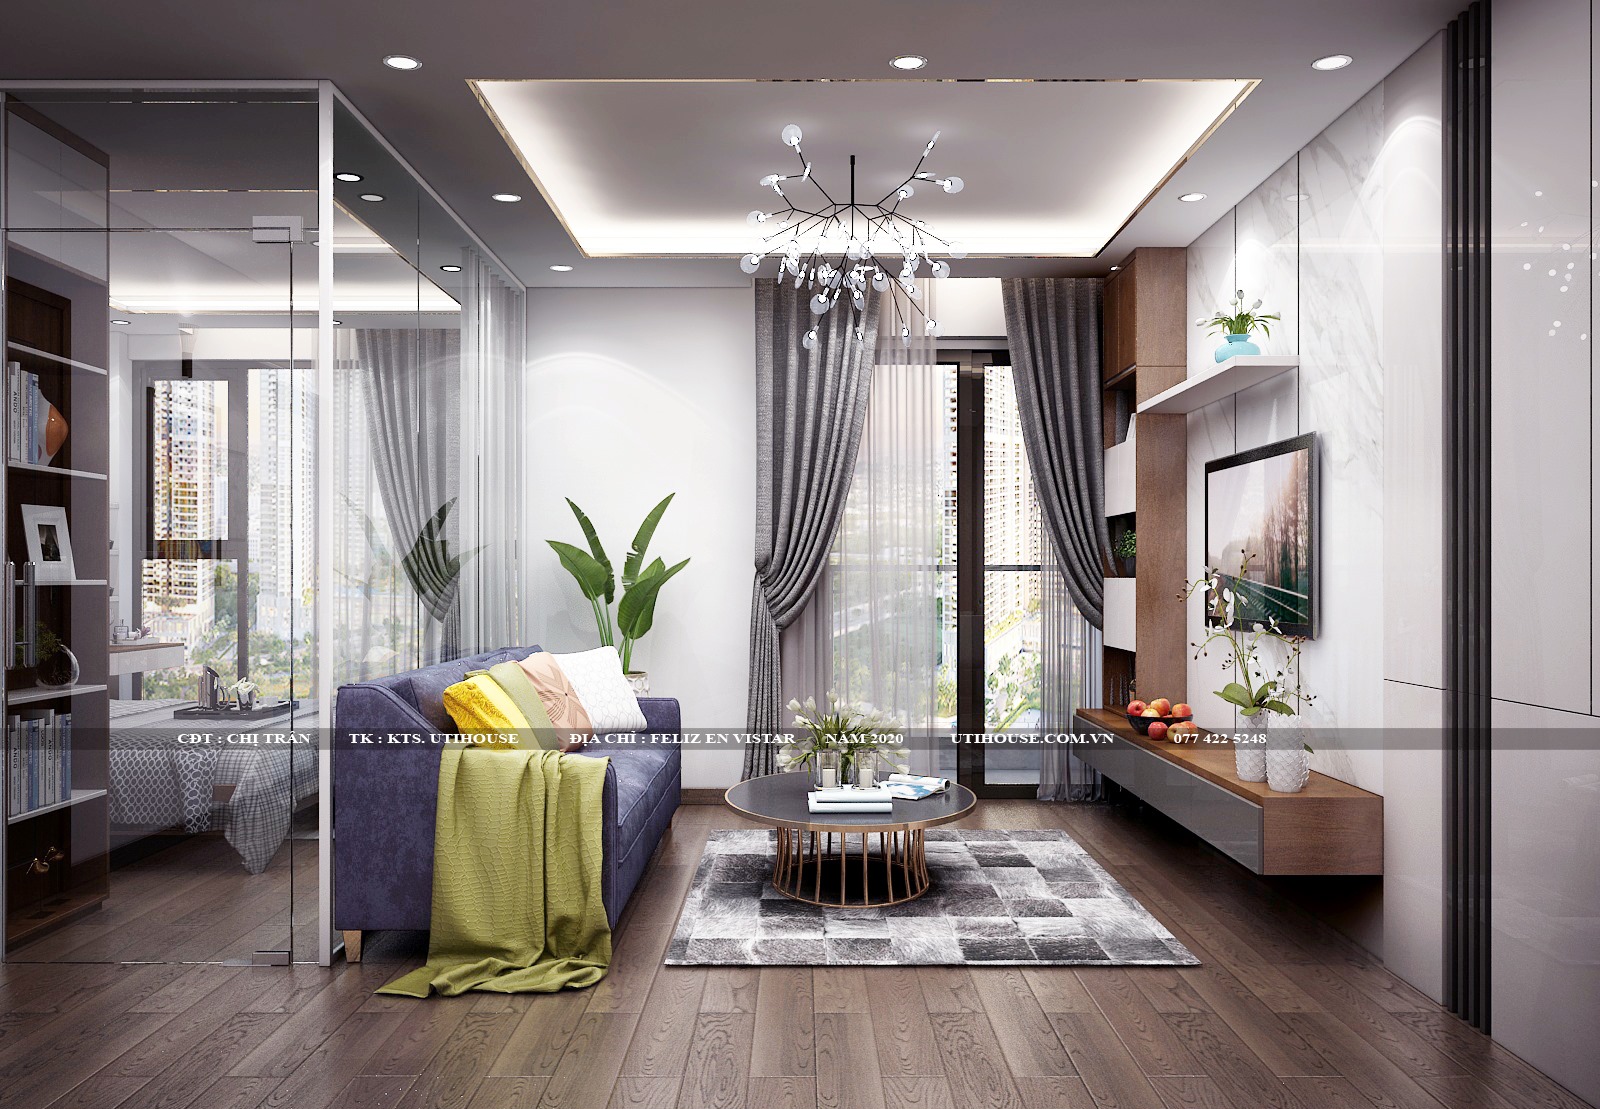 Gợi ý những phong cách thiết kế nội thất chung cư vạn người mê